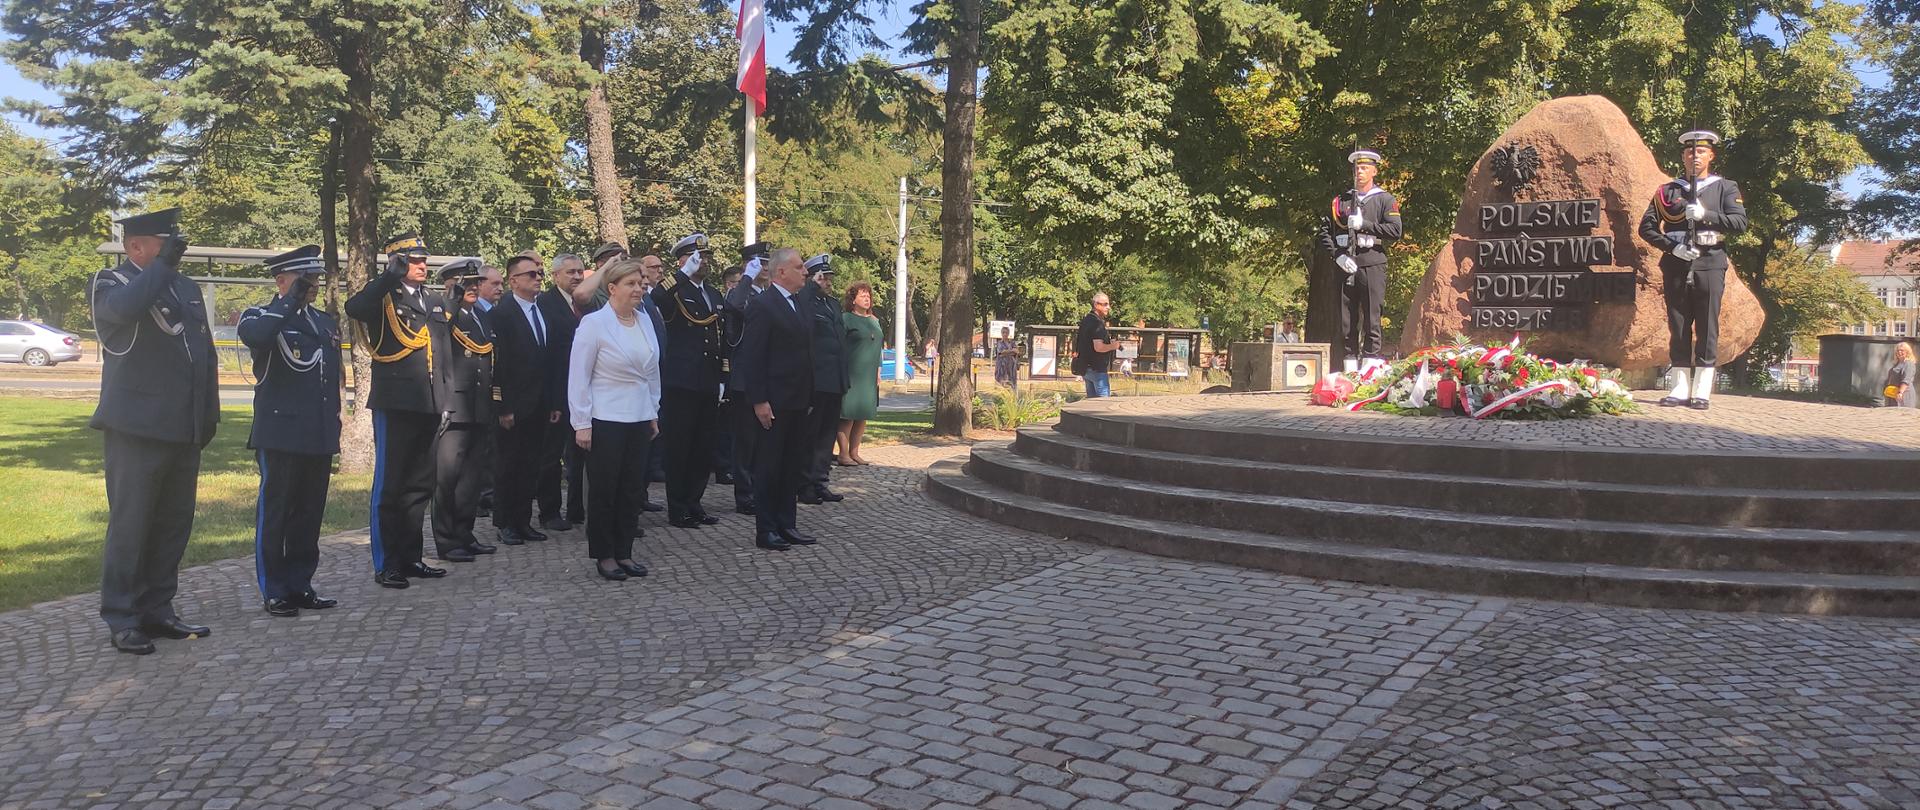 Wojewoda pomorski, zaproszeni goście oraz przedstawiciele służb mundurowych stojąc na baczność przed pomnikiem Polskiego Państwa Podziemnego oddają honor.